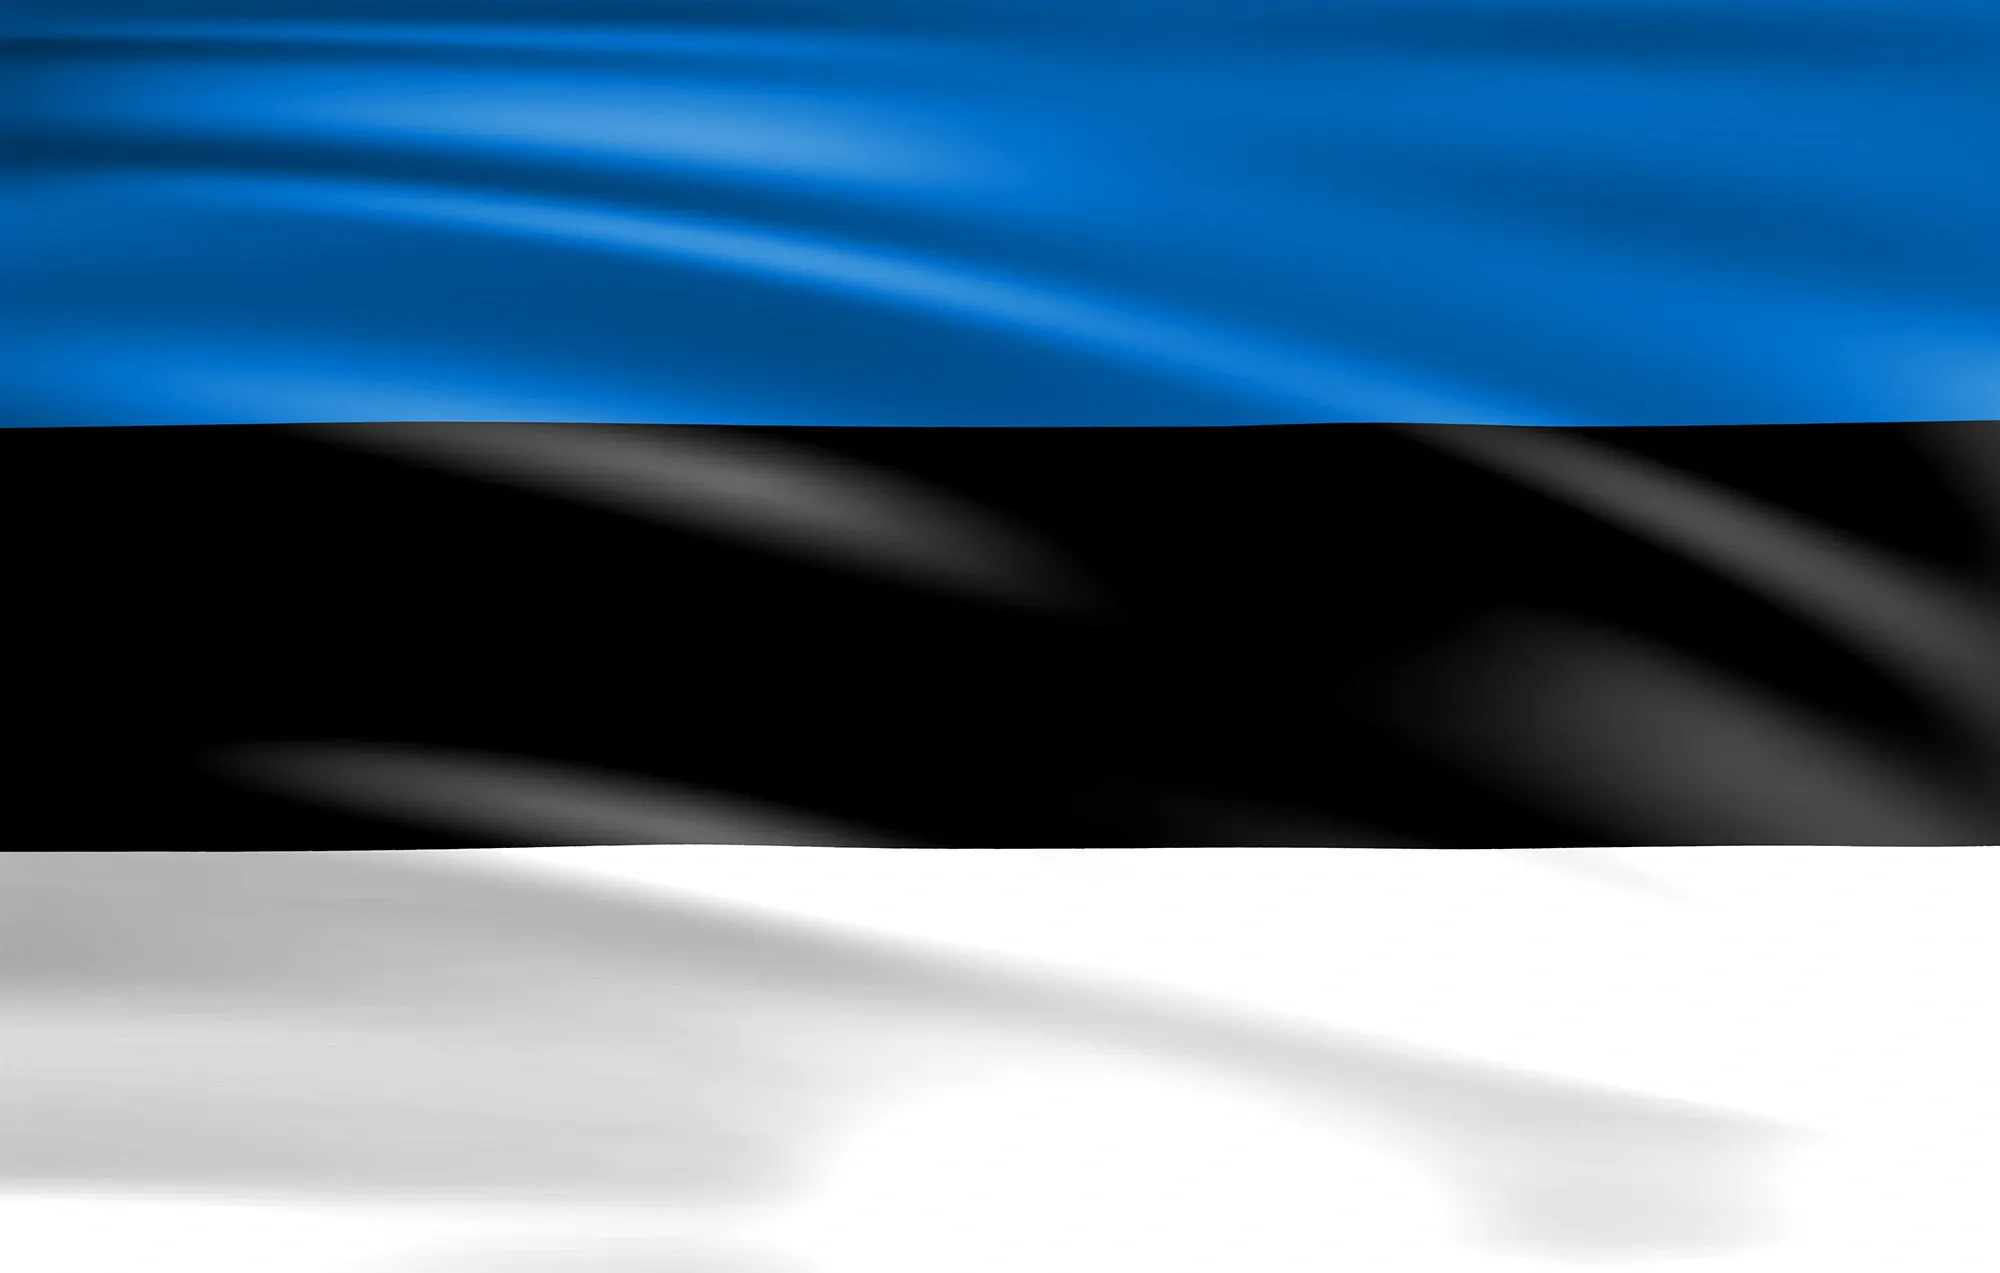 эстония